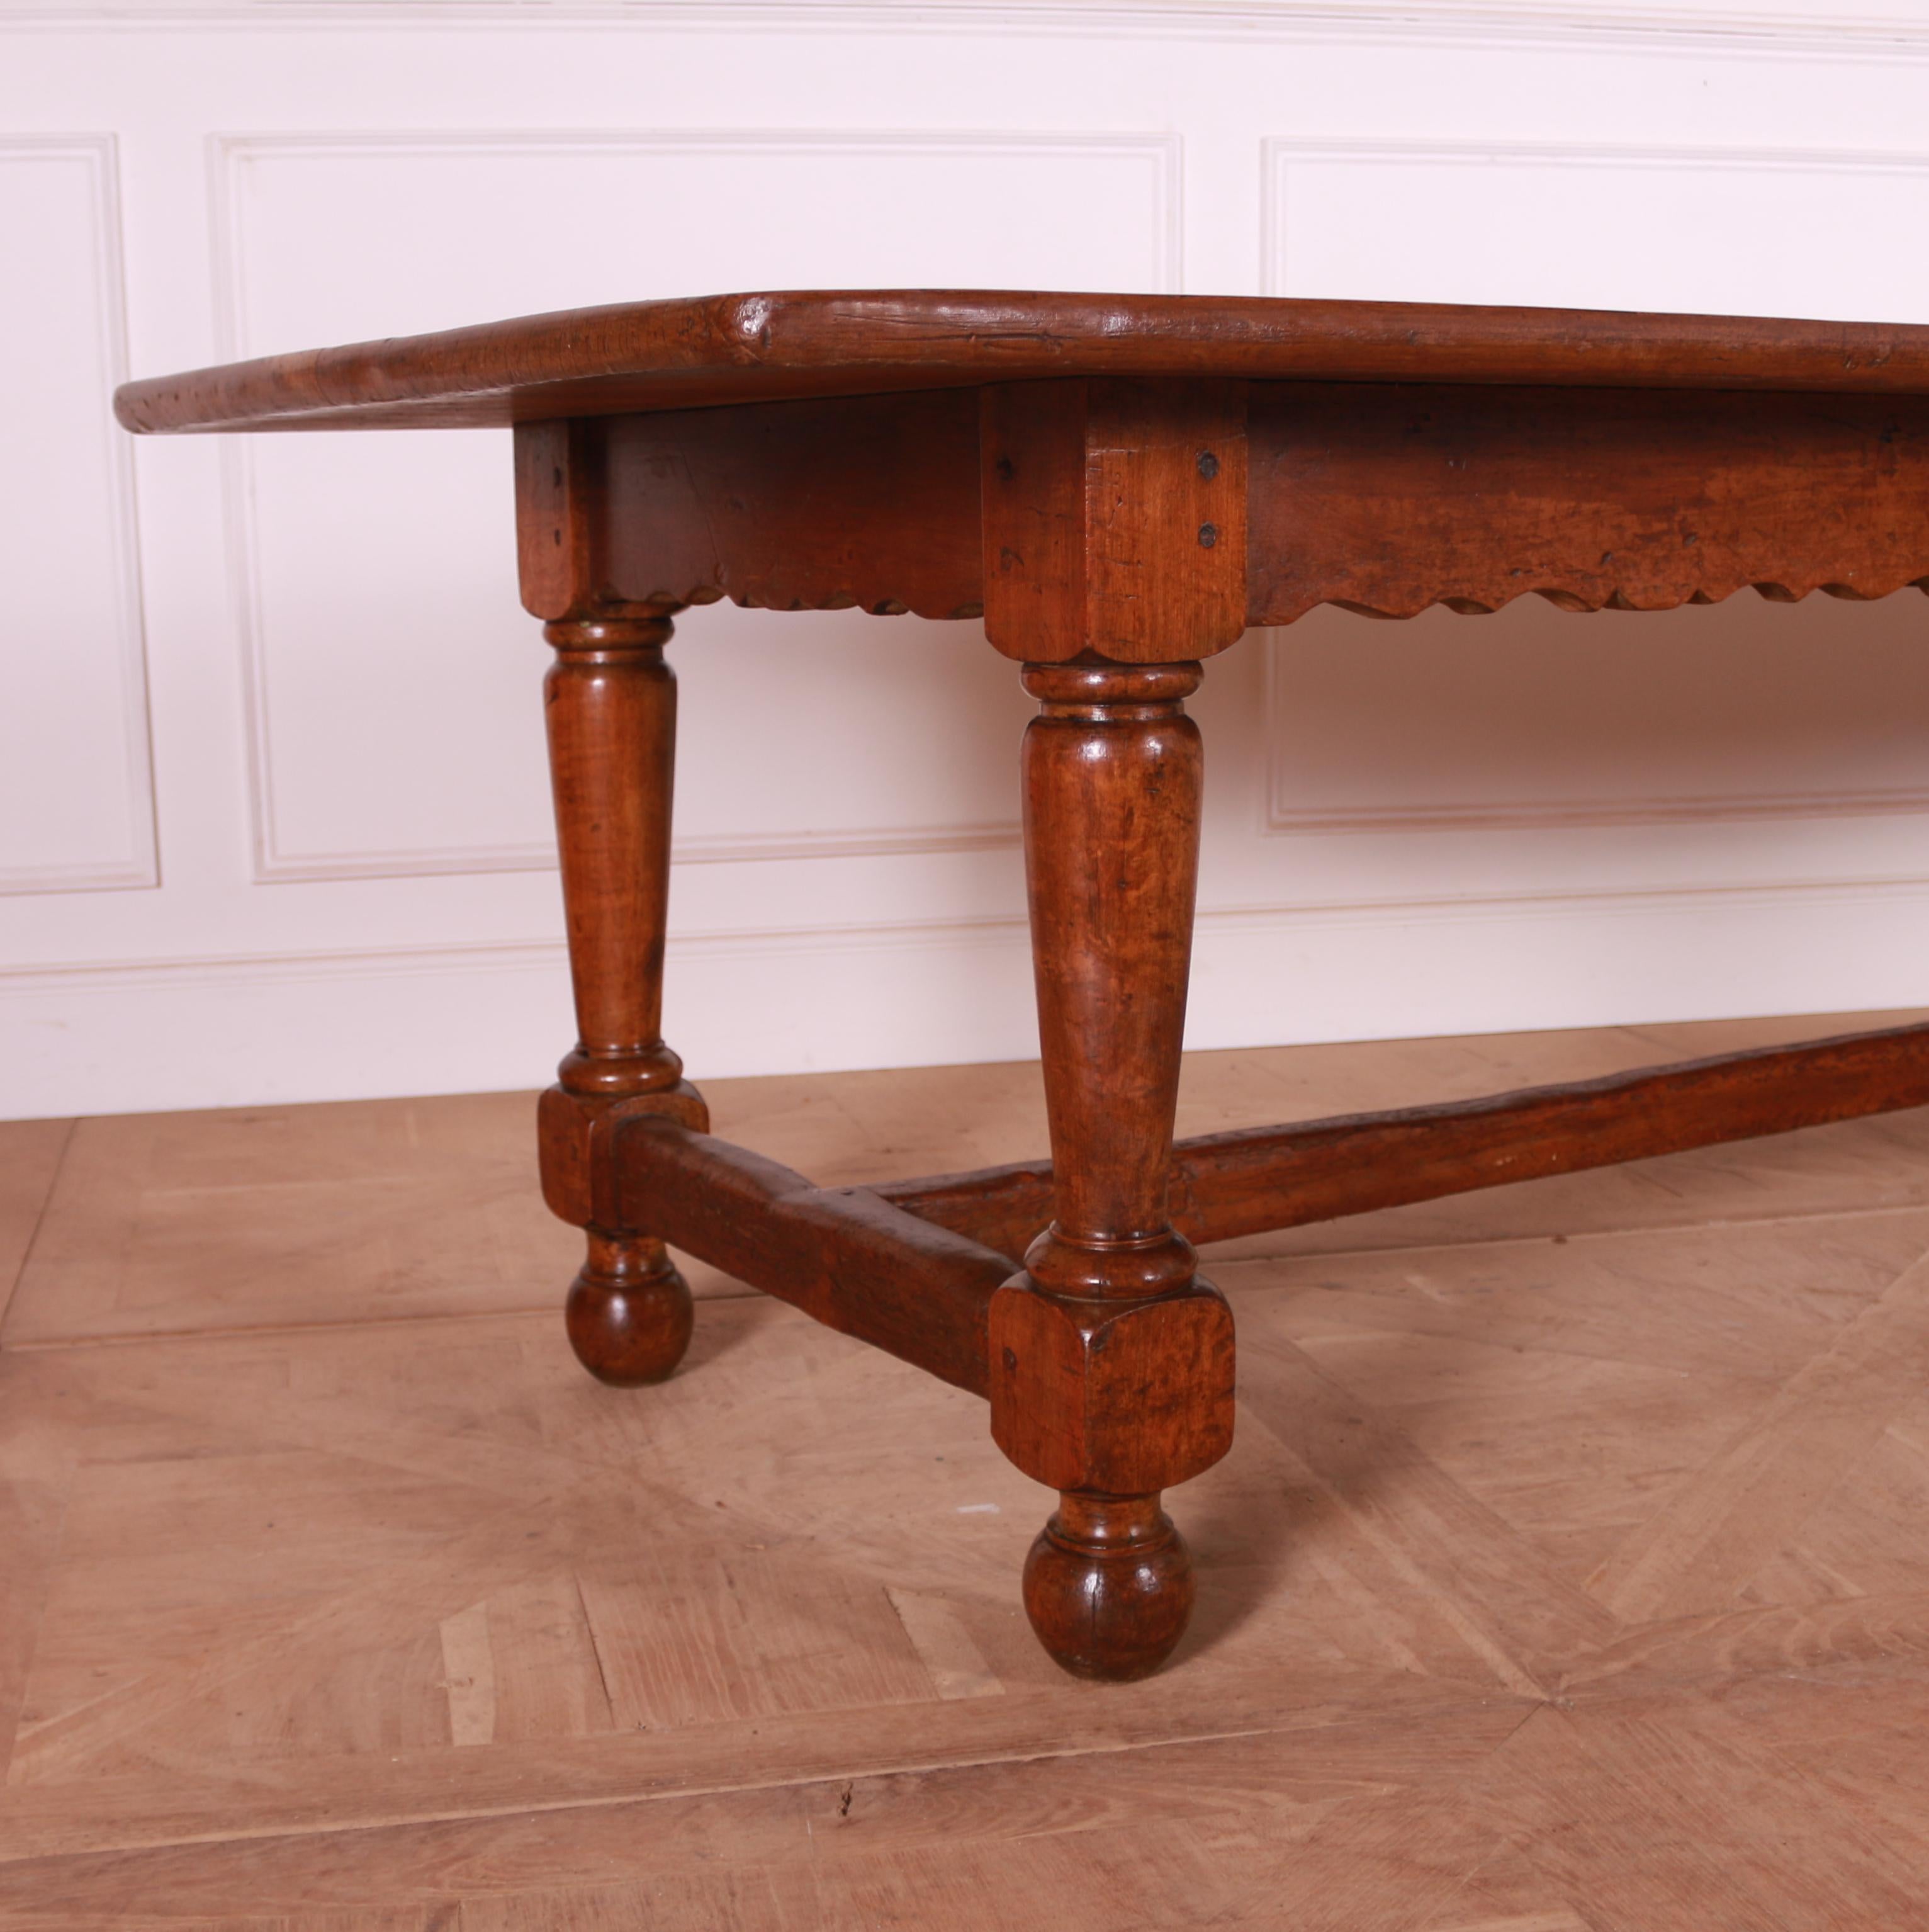 Wunderschöner großer englischer Bauernhoftisch aus Nussbaumholz aus dem 19. Jahrhundert mit einer fantastischen Farbe. 1860.

Referenz: 7652

Abmessungen
120,5 Zoll (306 cm) breit
38 Zoll (97 cm) tief
31 Zoll (79 cm) hoch